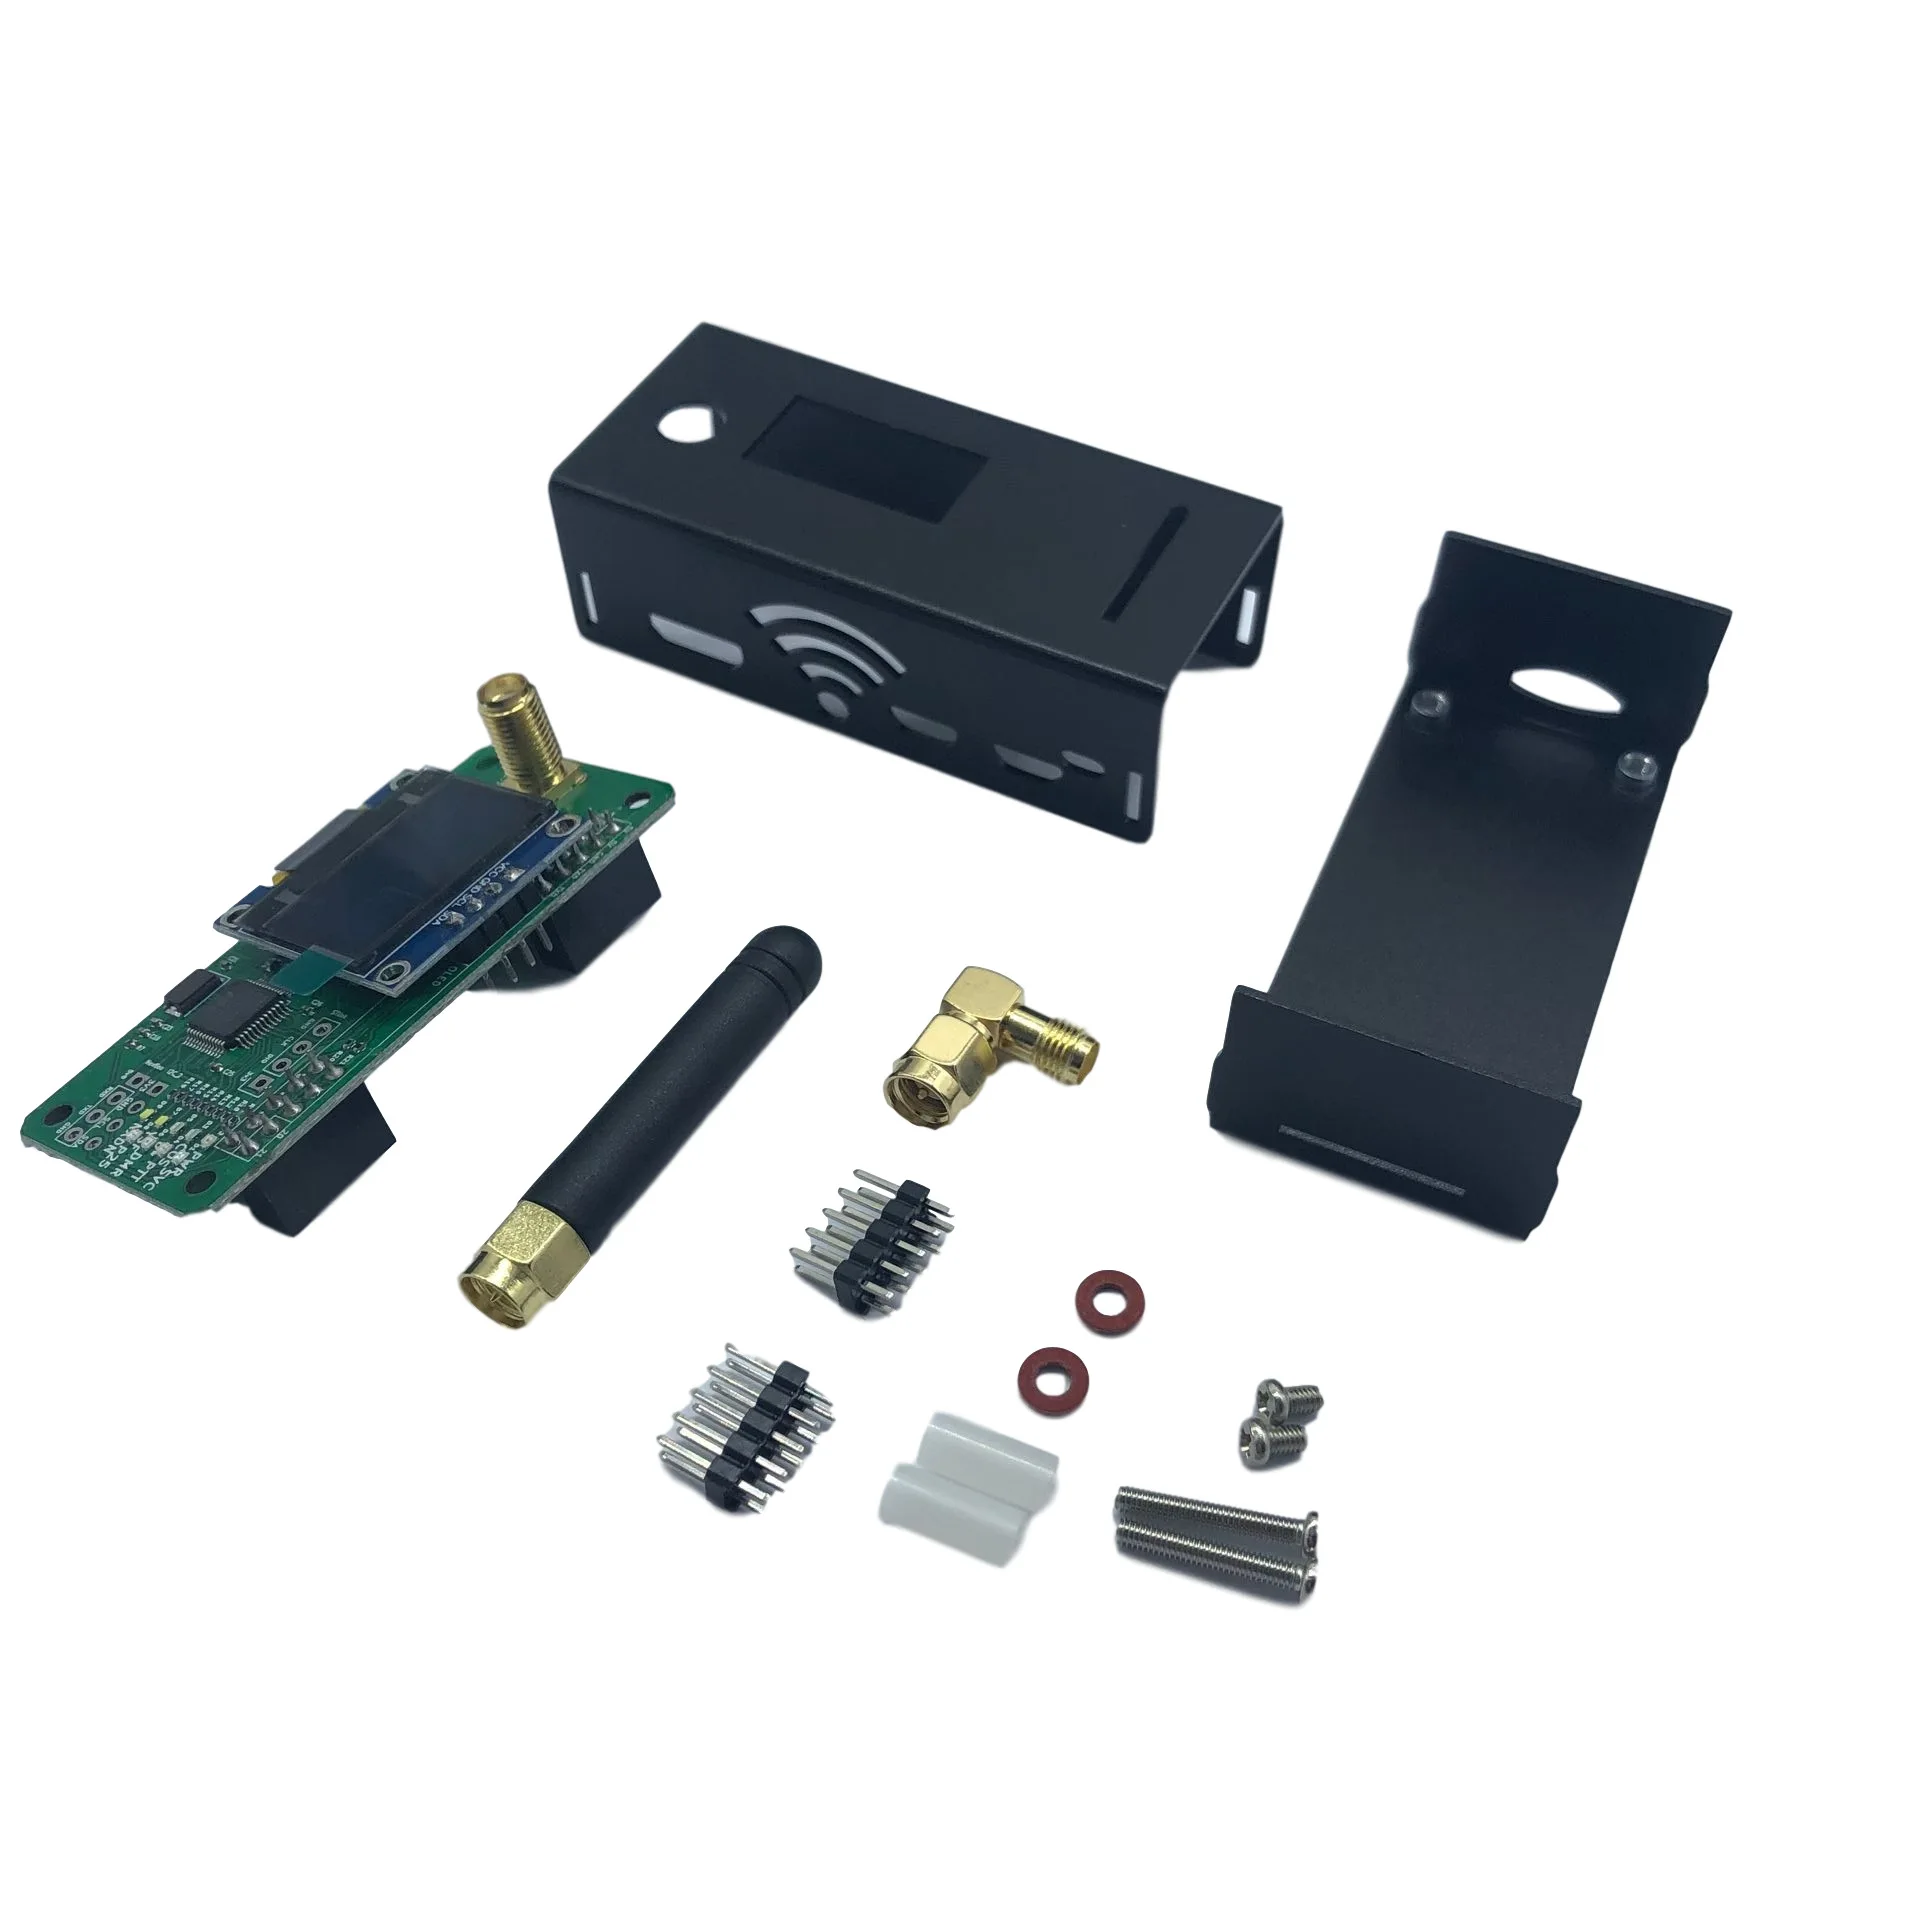 Assembled Jumbospot MMDVM Hotspot QSO Support P25 DSTAR DMR YSF NXDN + Raspberry Pi Zero w +OLED +Antenna + 16G SD Card + Case